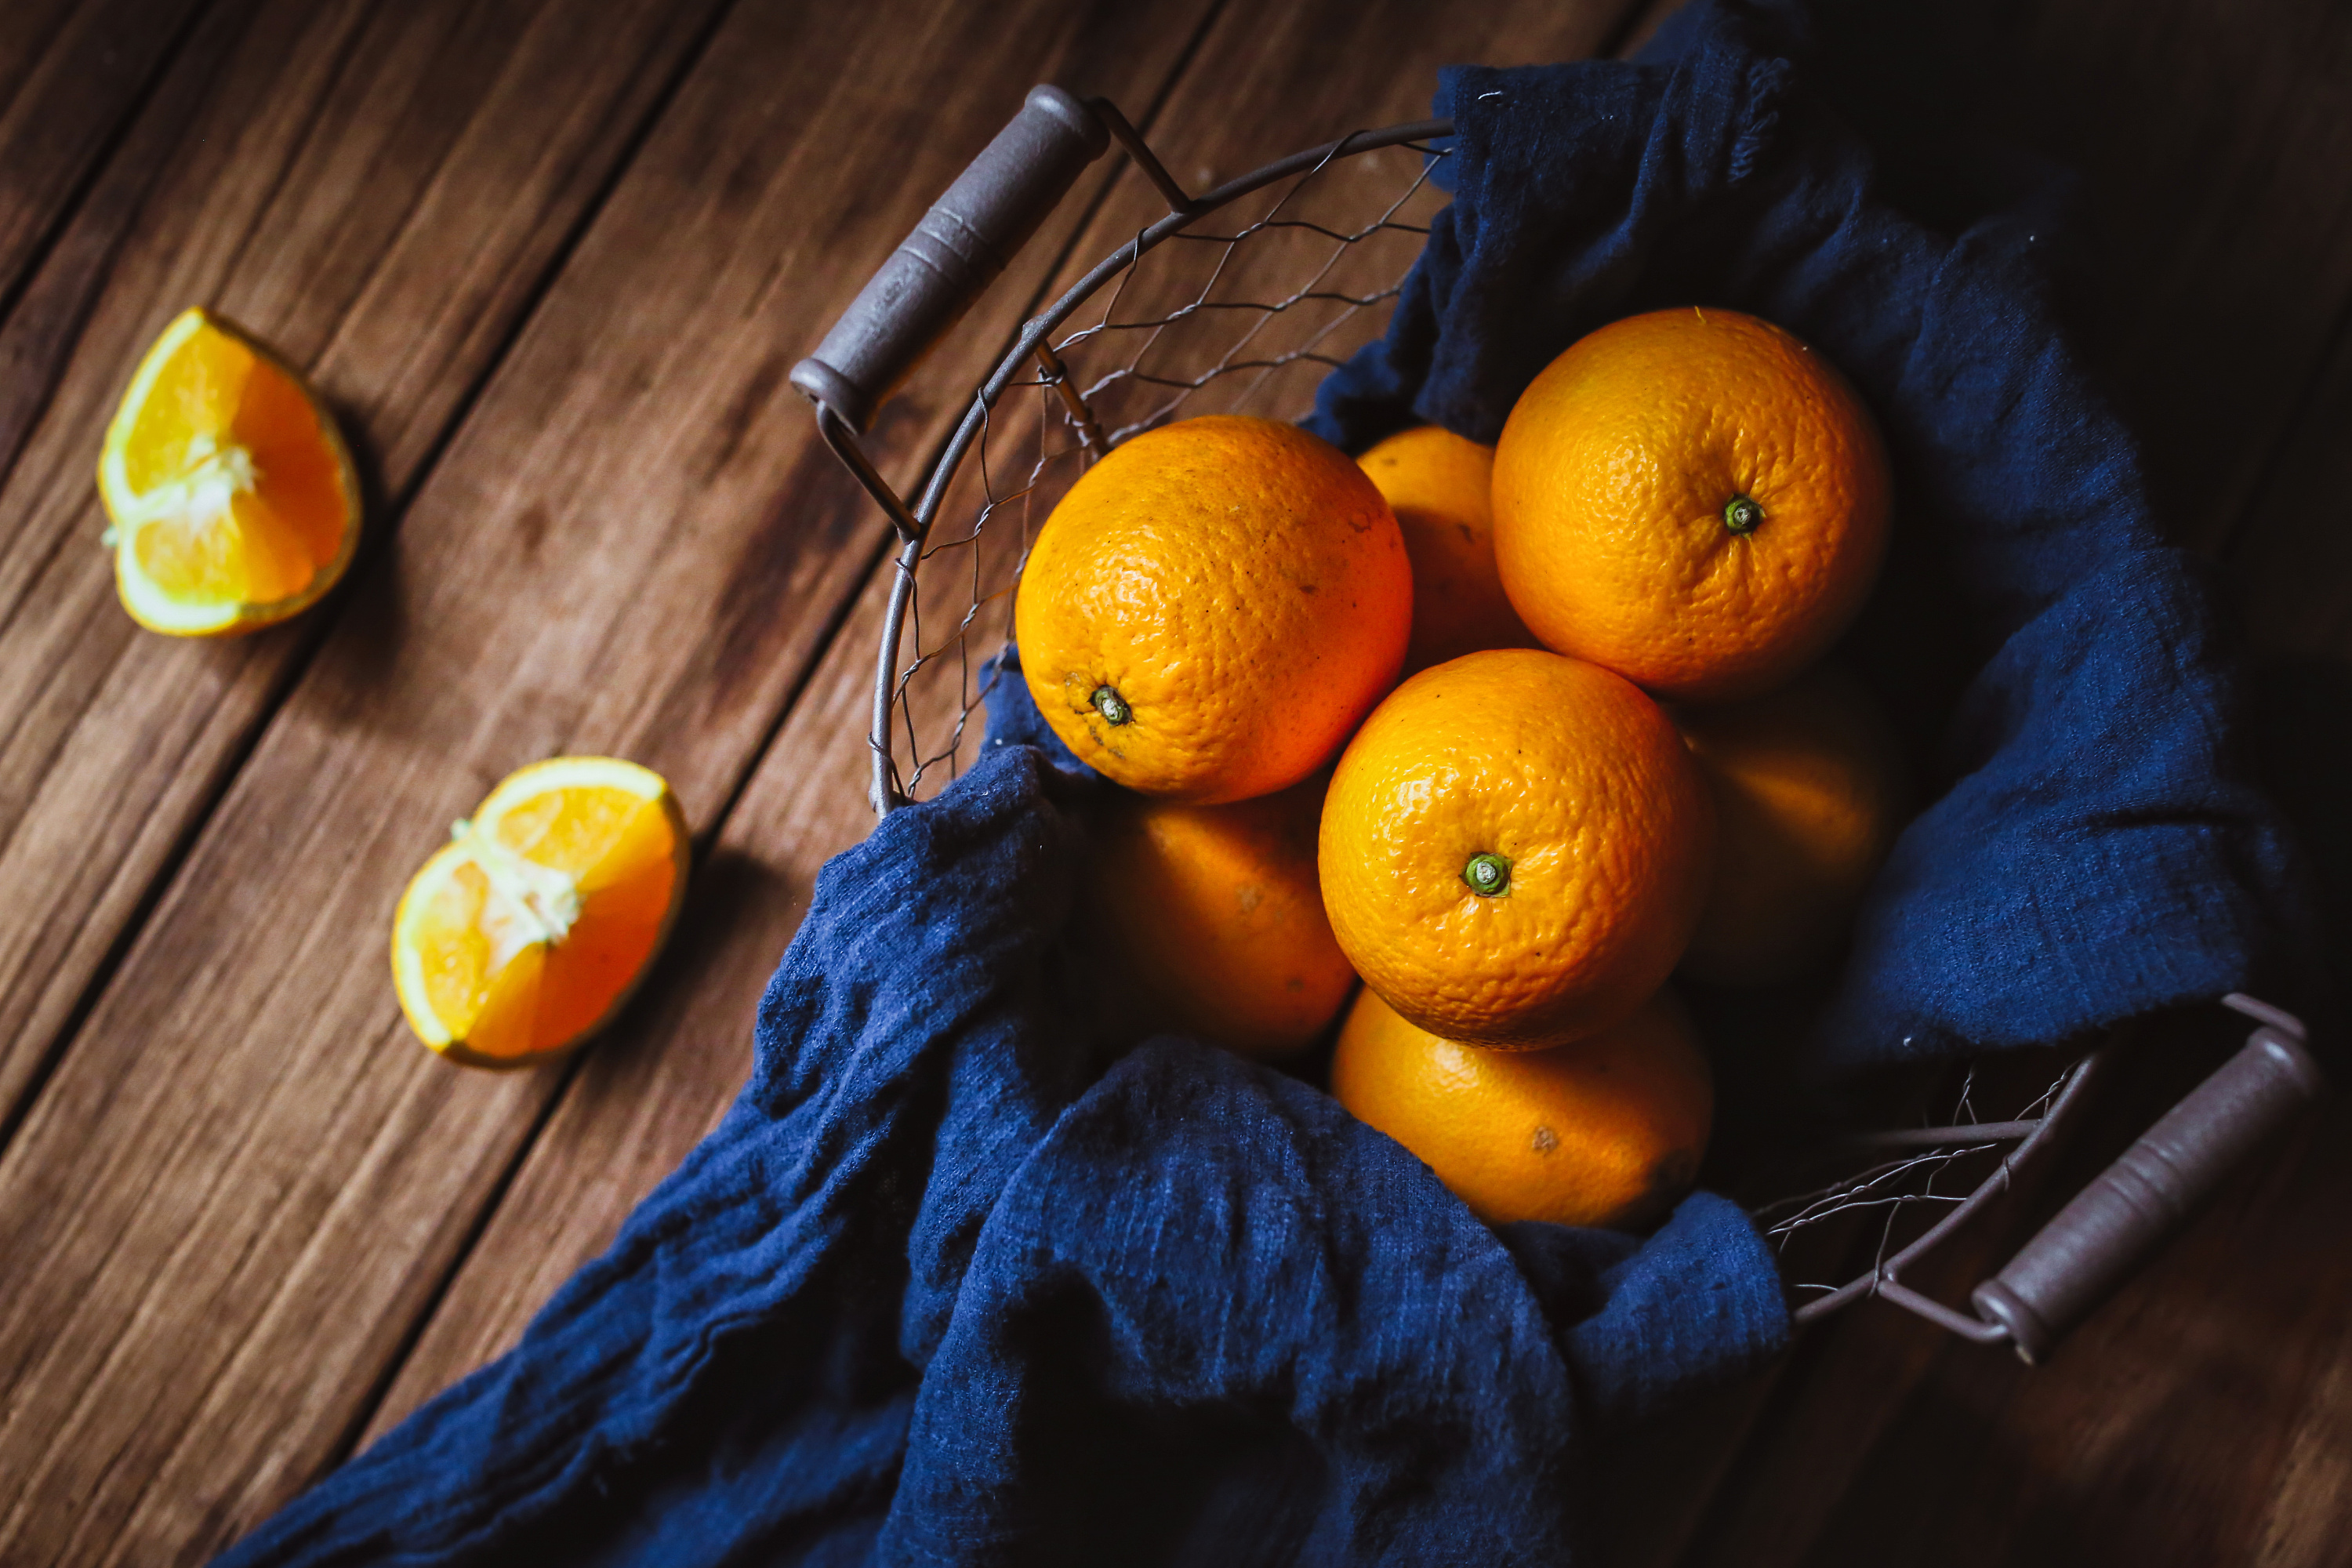 水果橙子摄影图高清摄影大图-千库网